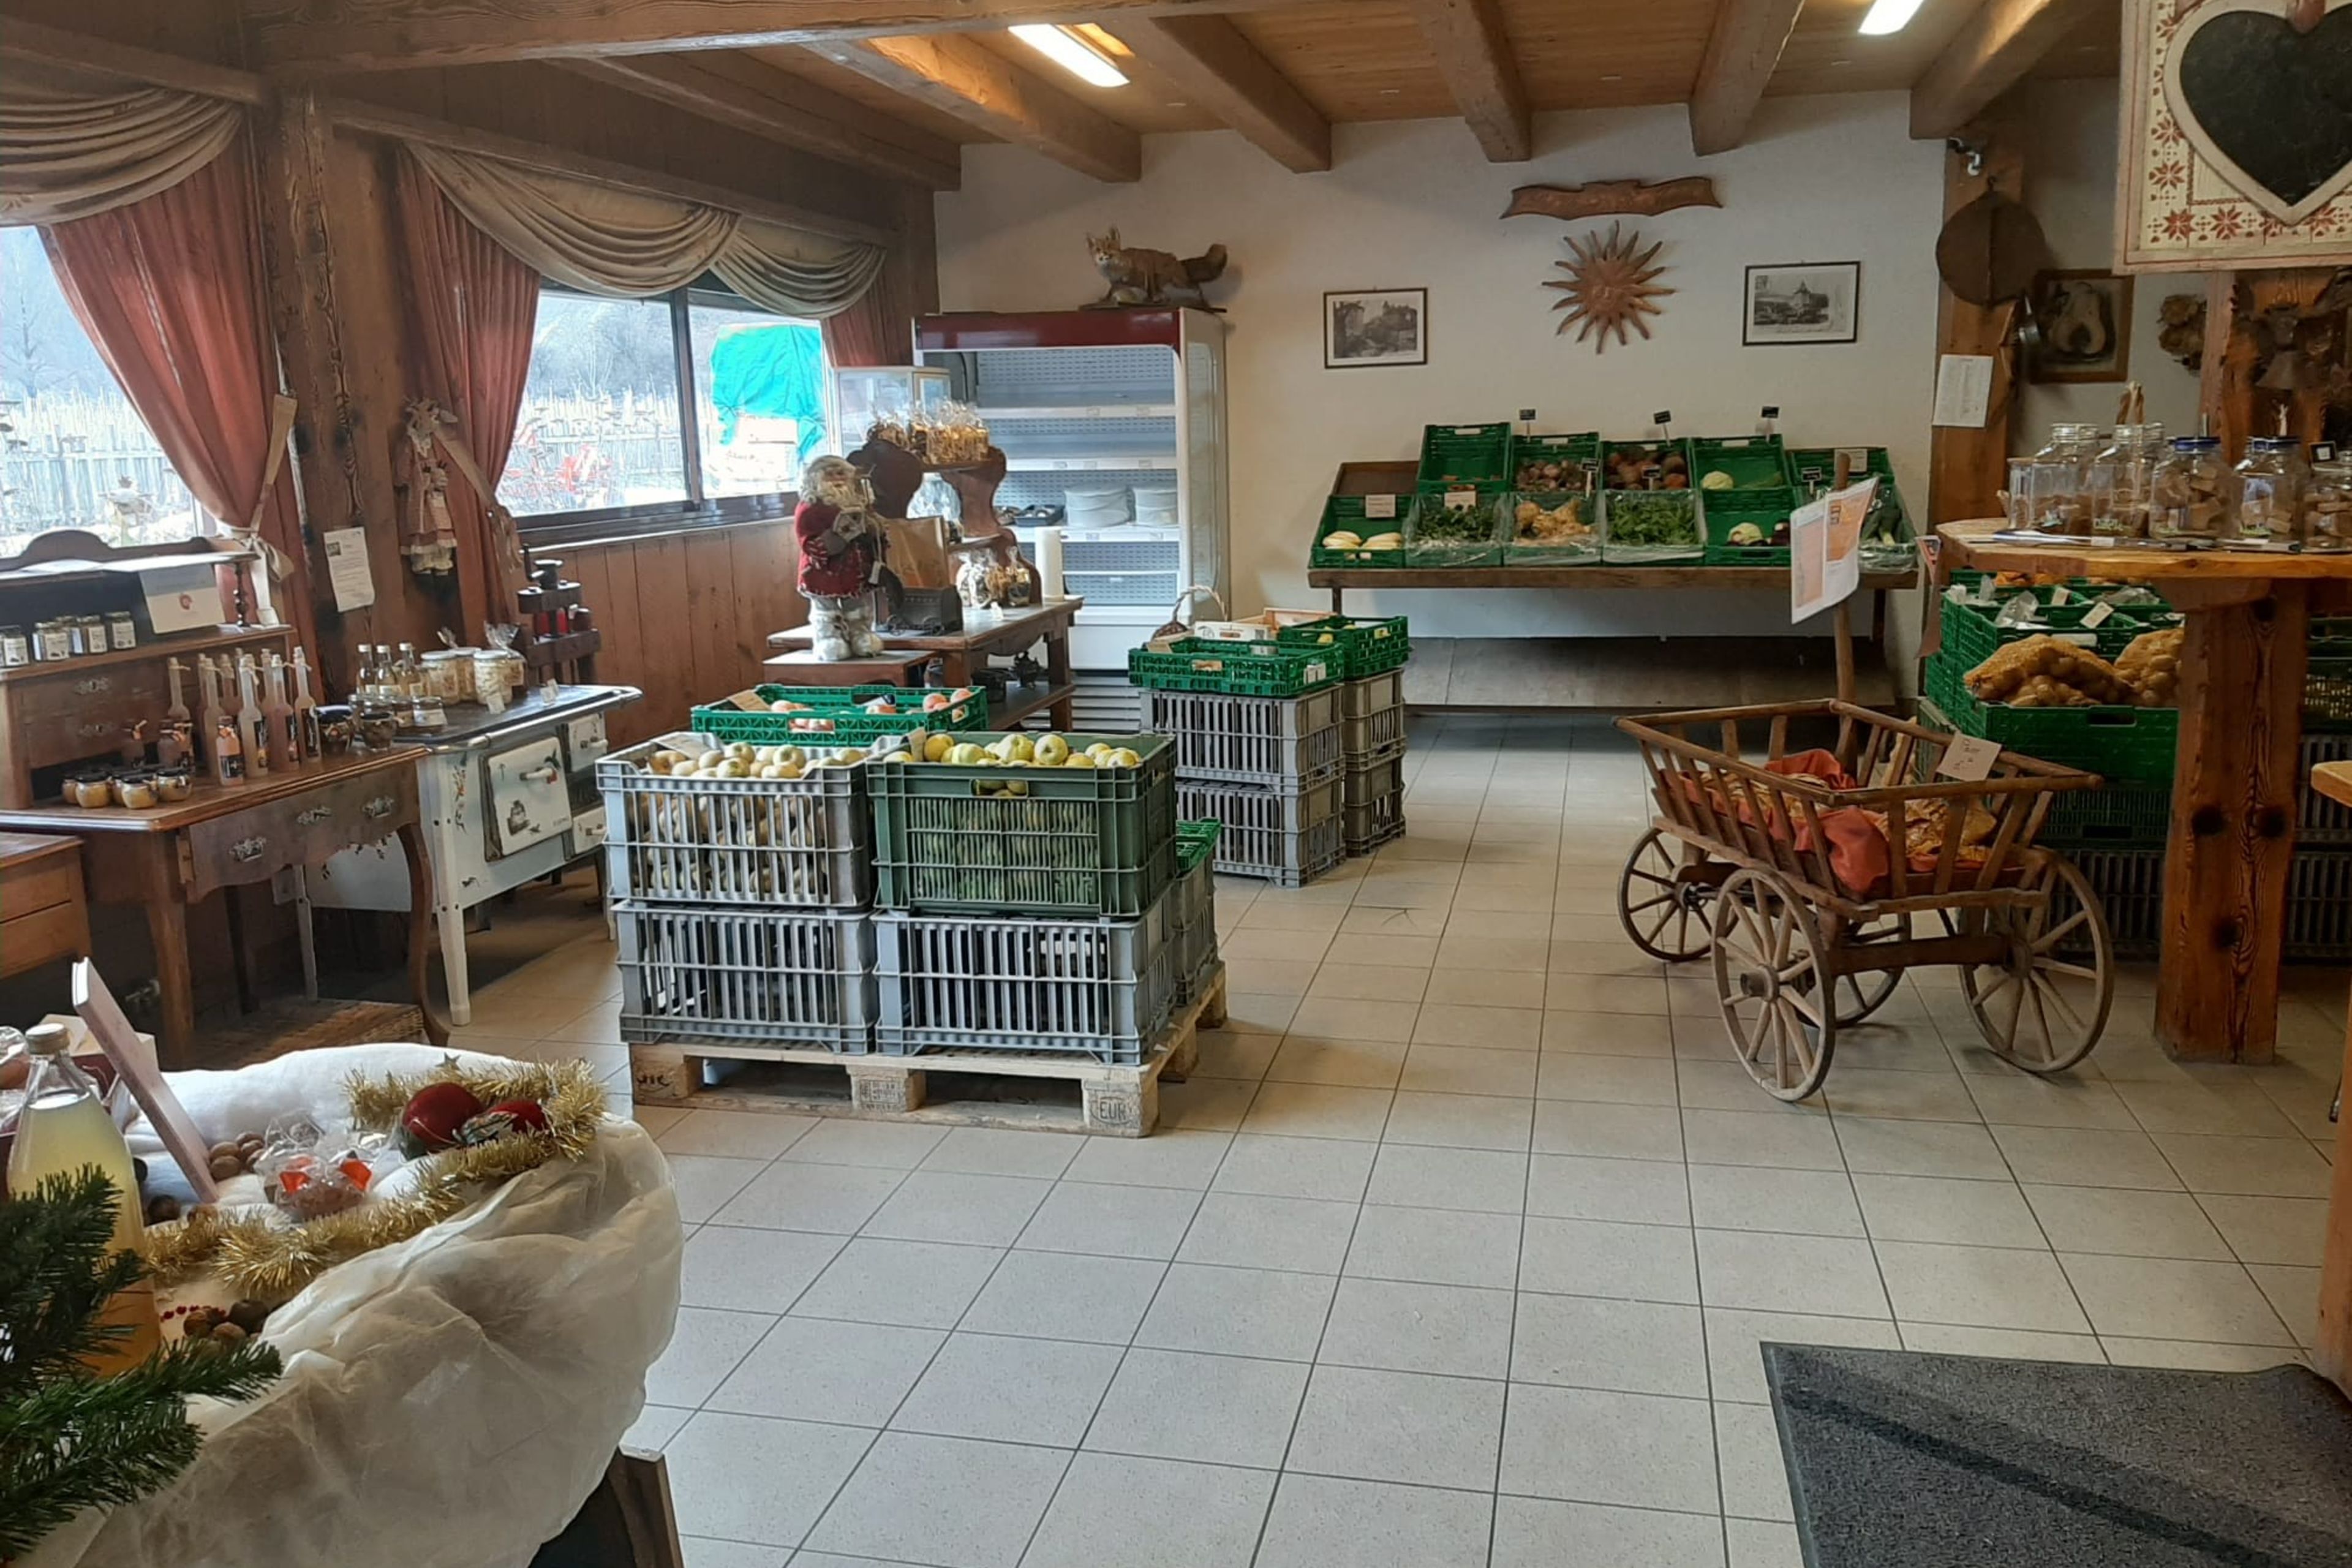 Direktverkauf von Gemüse und Früchten im Wallis. Les vergers du soleil. Wallis, Schweiz